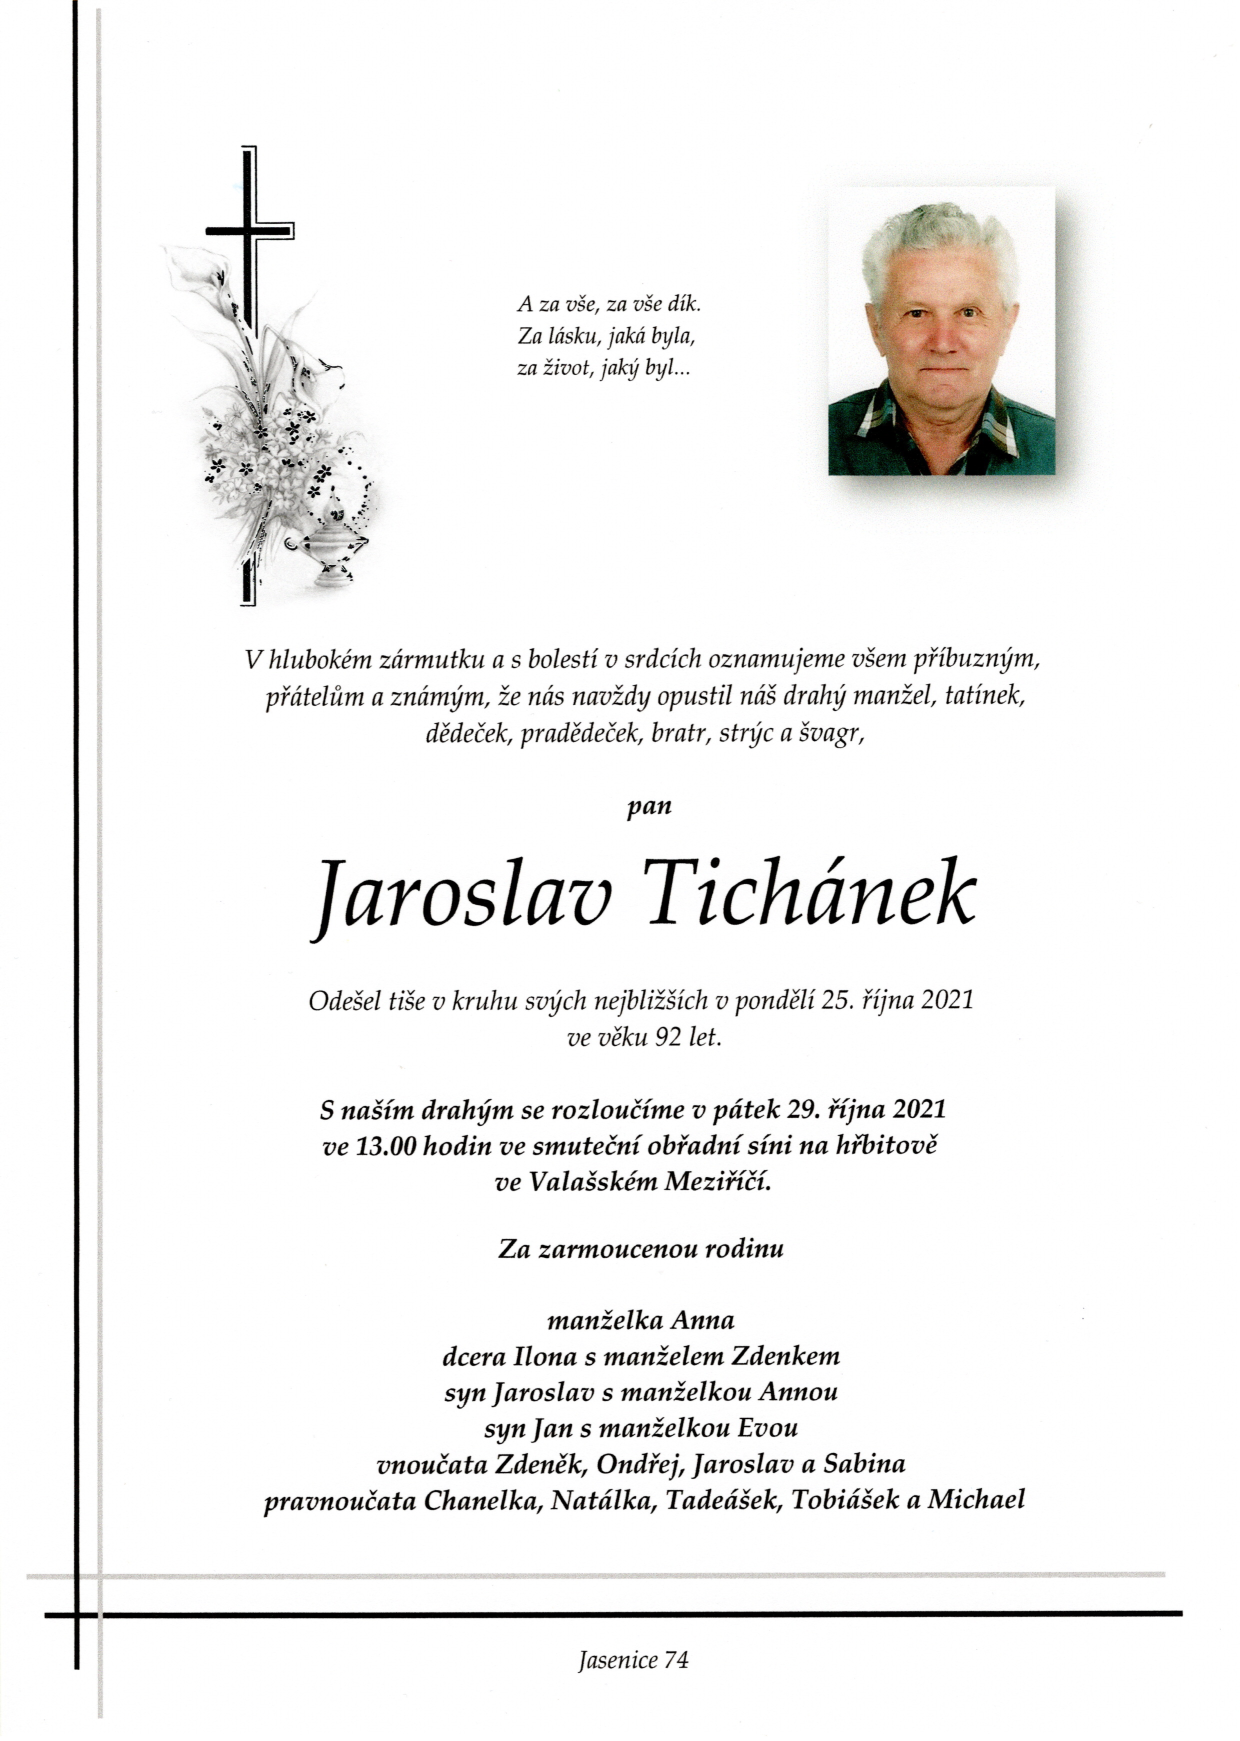 Jaroslav Tichánek